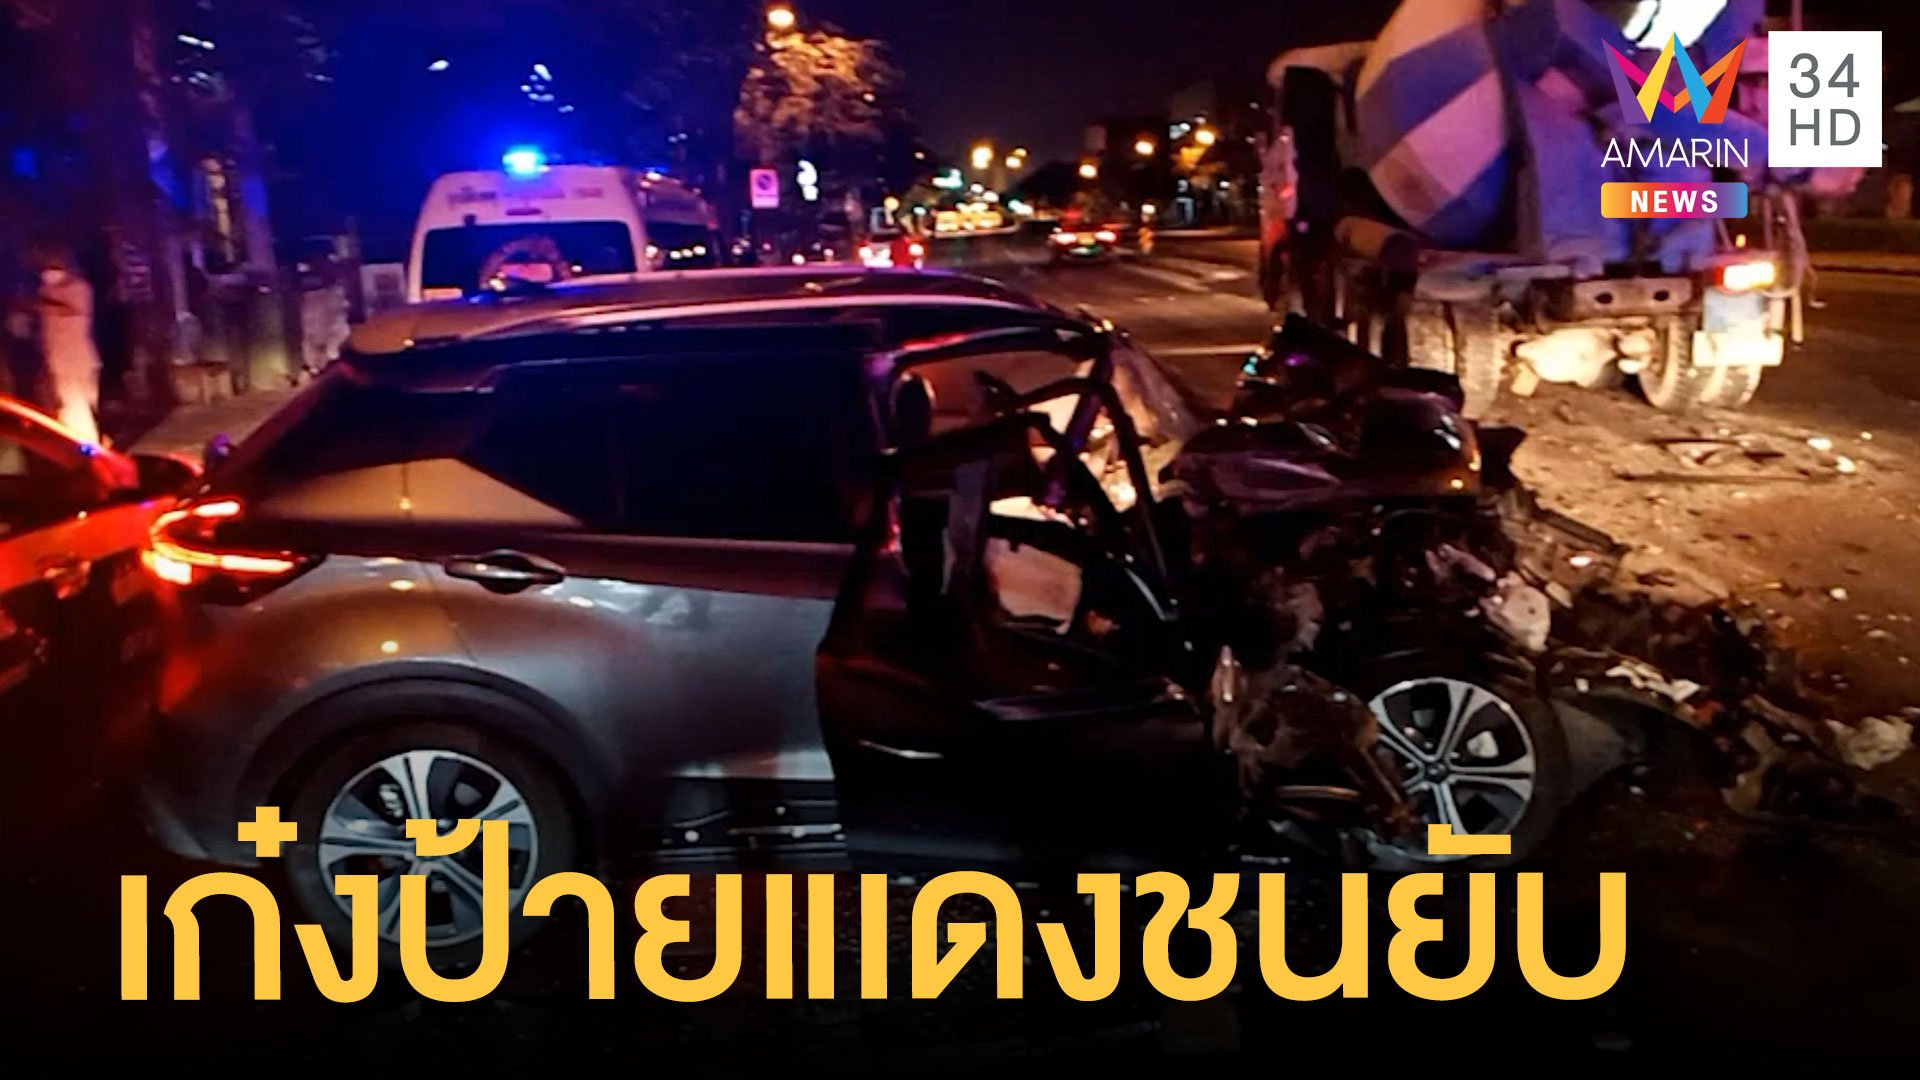 เก๋งป้ายแดงเสยท้ายรถโม่ปูนพังยับ คนขับเสียชีวิตคาที่  | ข่าวเที่ยงอมรินทร์ | 21 เม.ย. 65 | AMARIN TVHD34